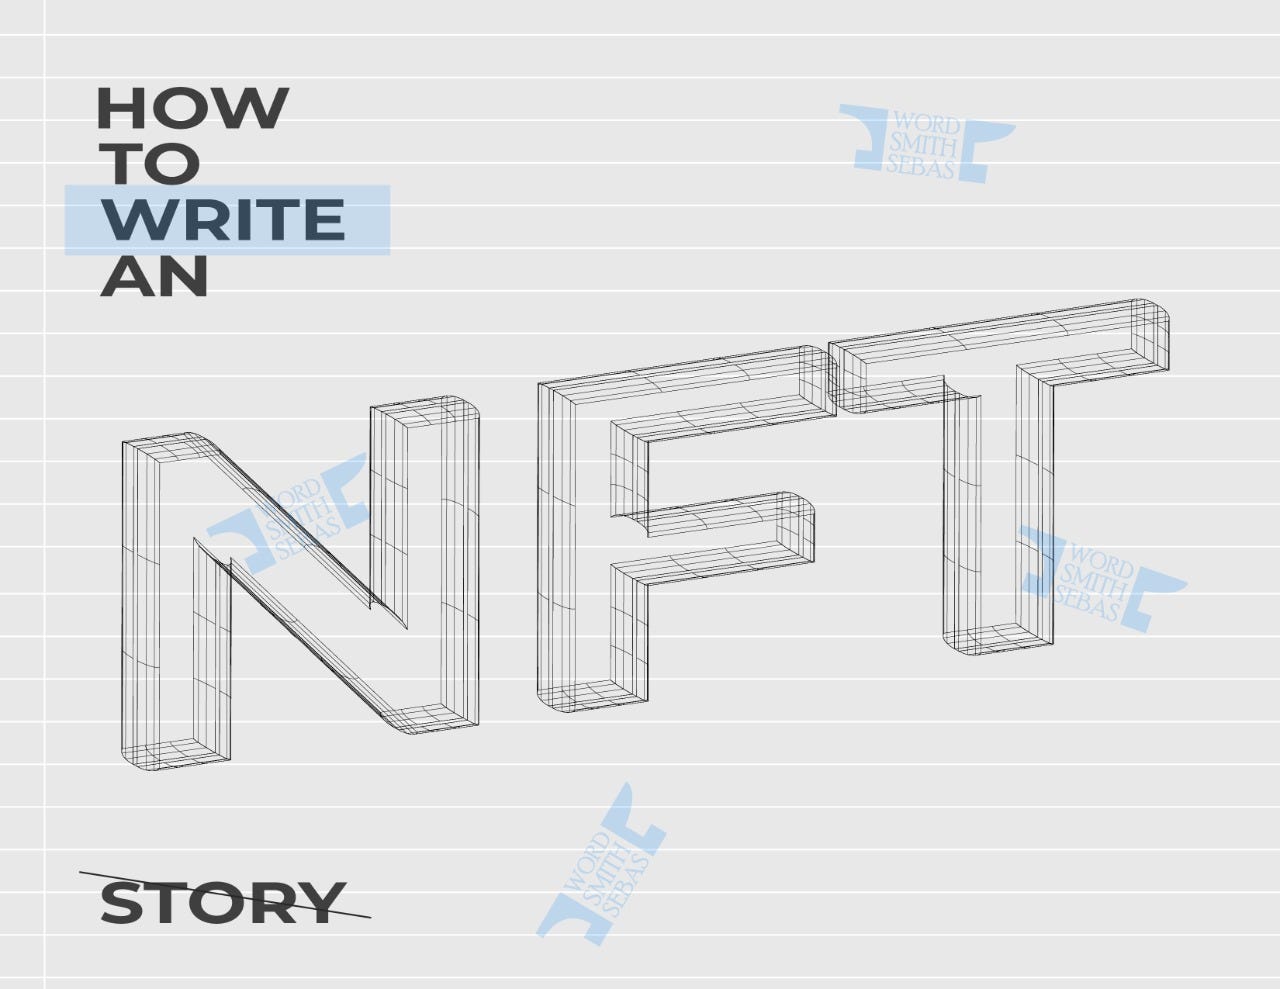 How can I write an NFT story?